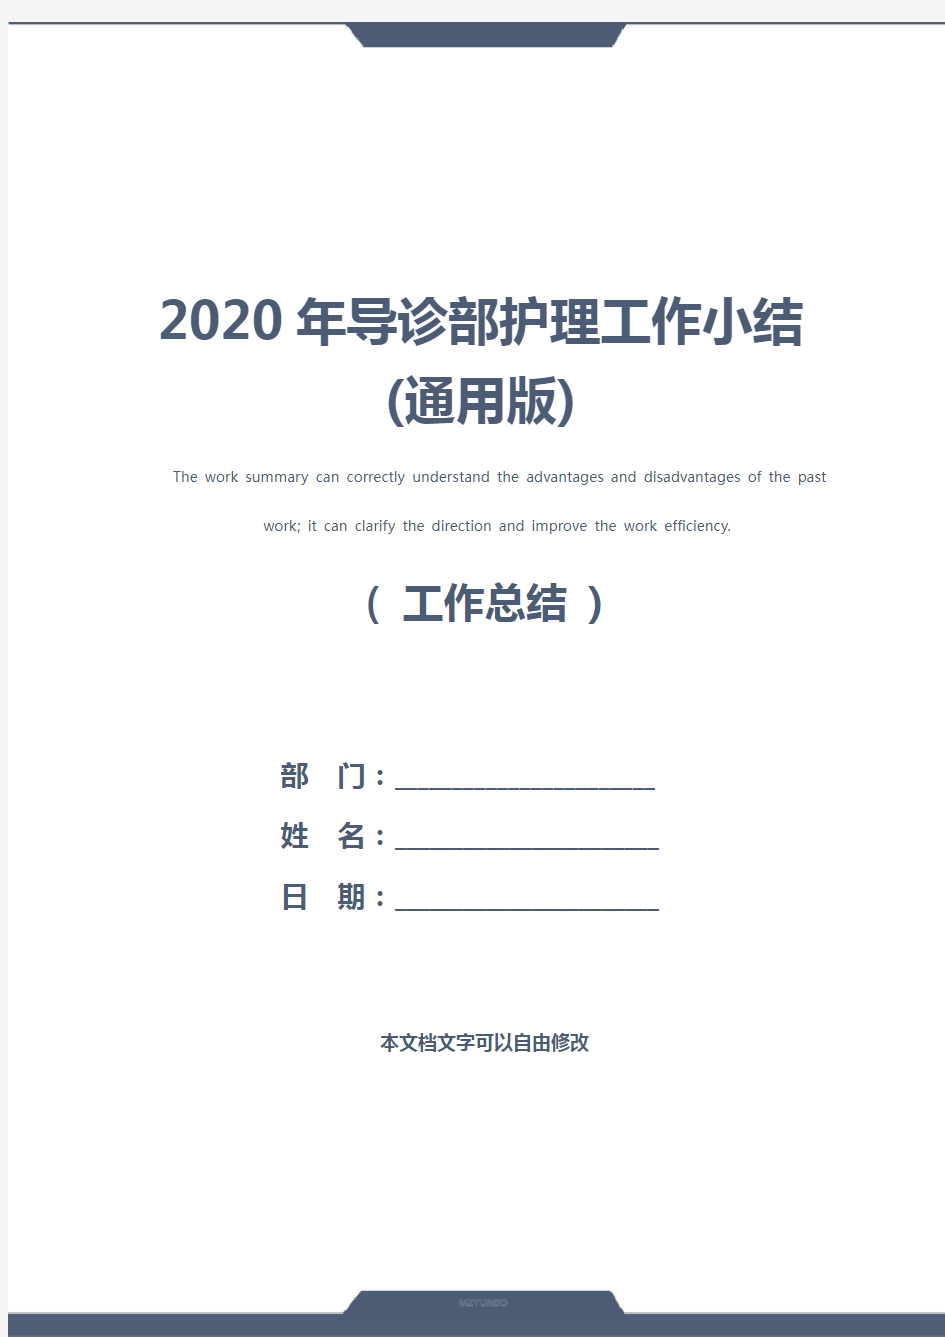 2020年导诊部护理工作小结(通用版)